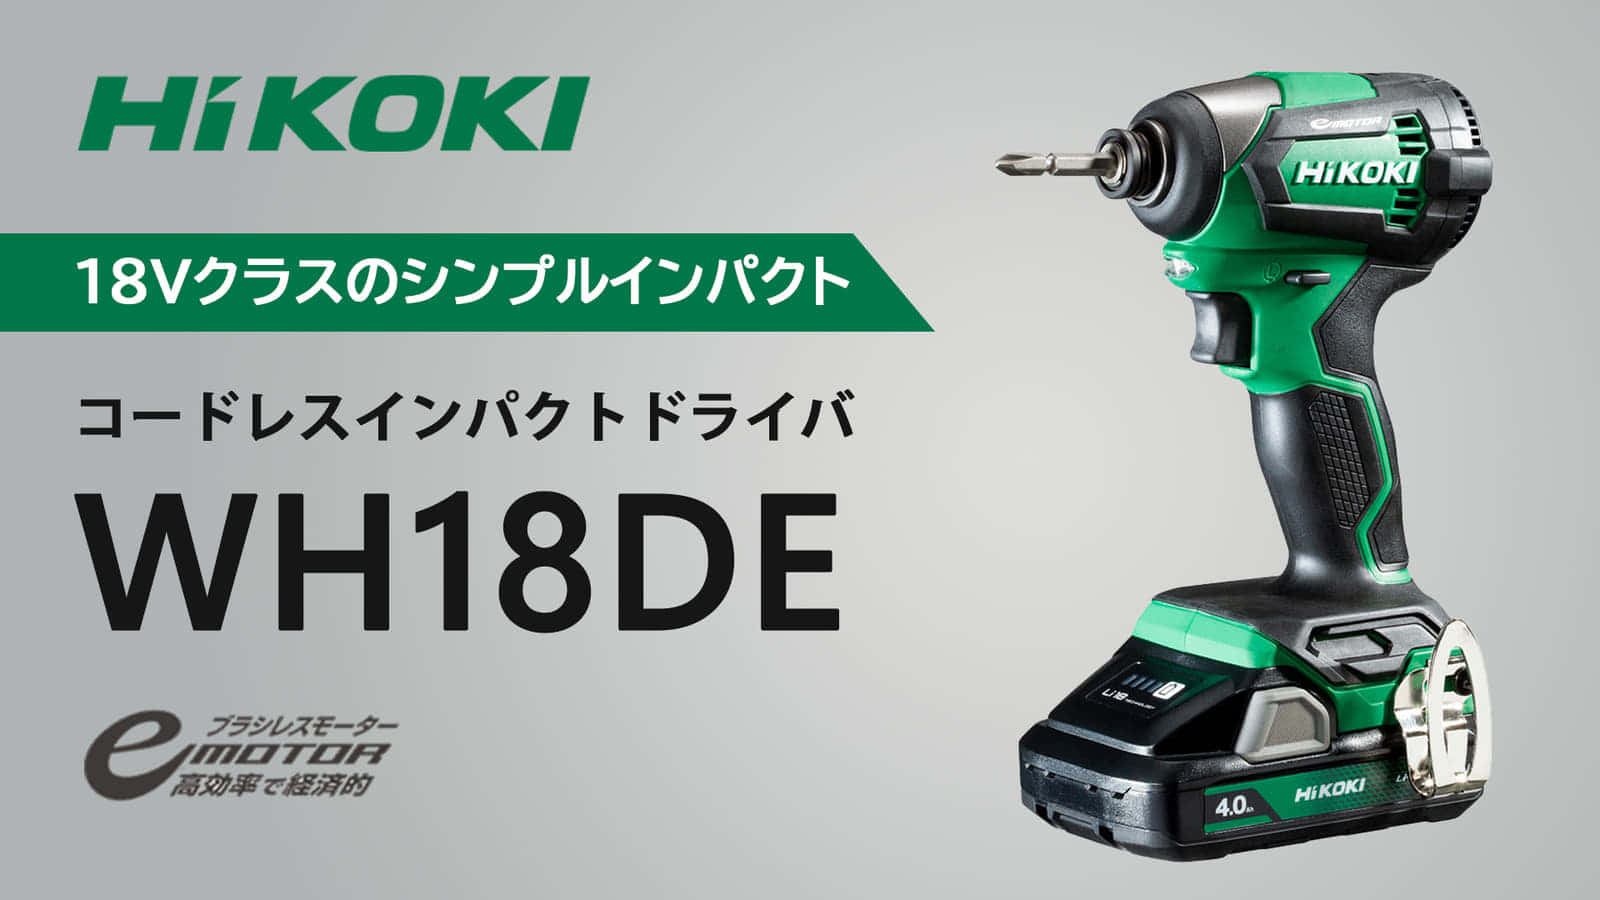 HiKOKI WH18DE コードレスインパクトドライバを発売、シンプルモデルの廉価版